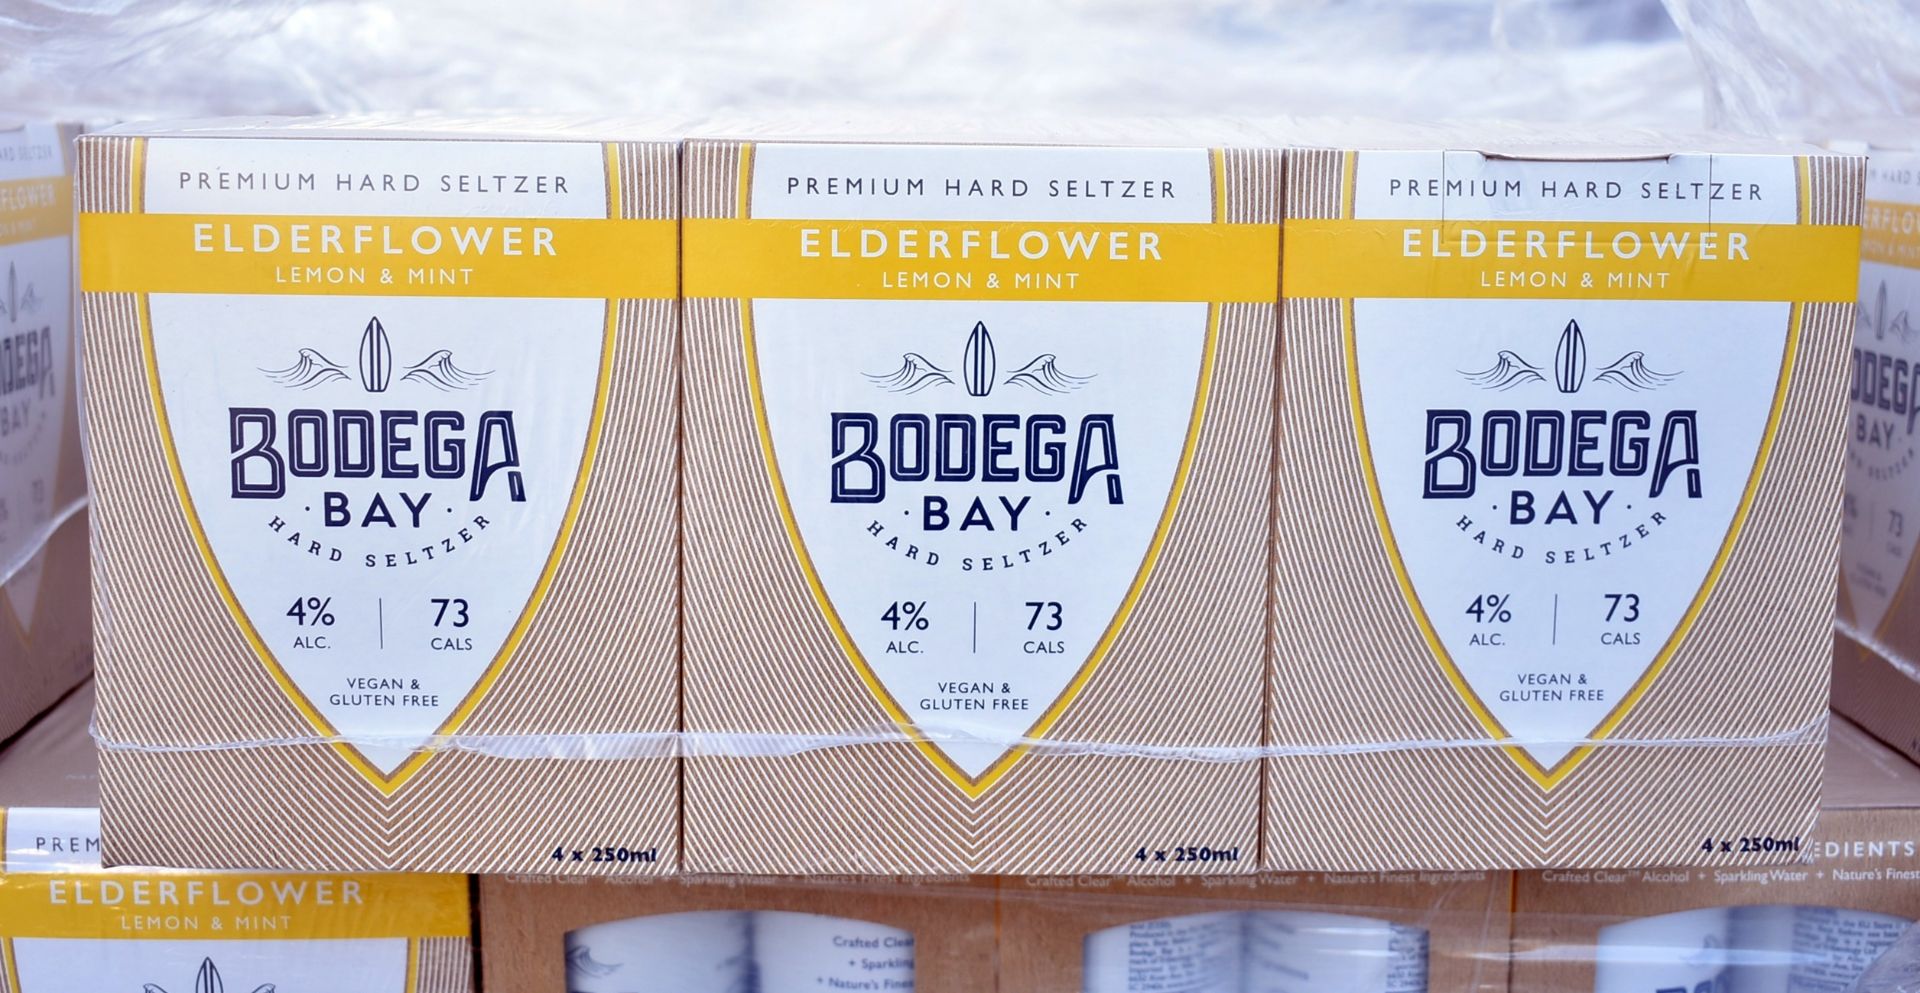 24 x Bodega Bay Hard Seltzer 250ml Alcoholic Sparkling Water Drinks - Elderflower Lemon & Mint - Image 3 of 3